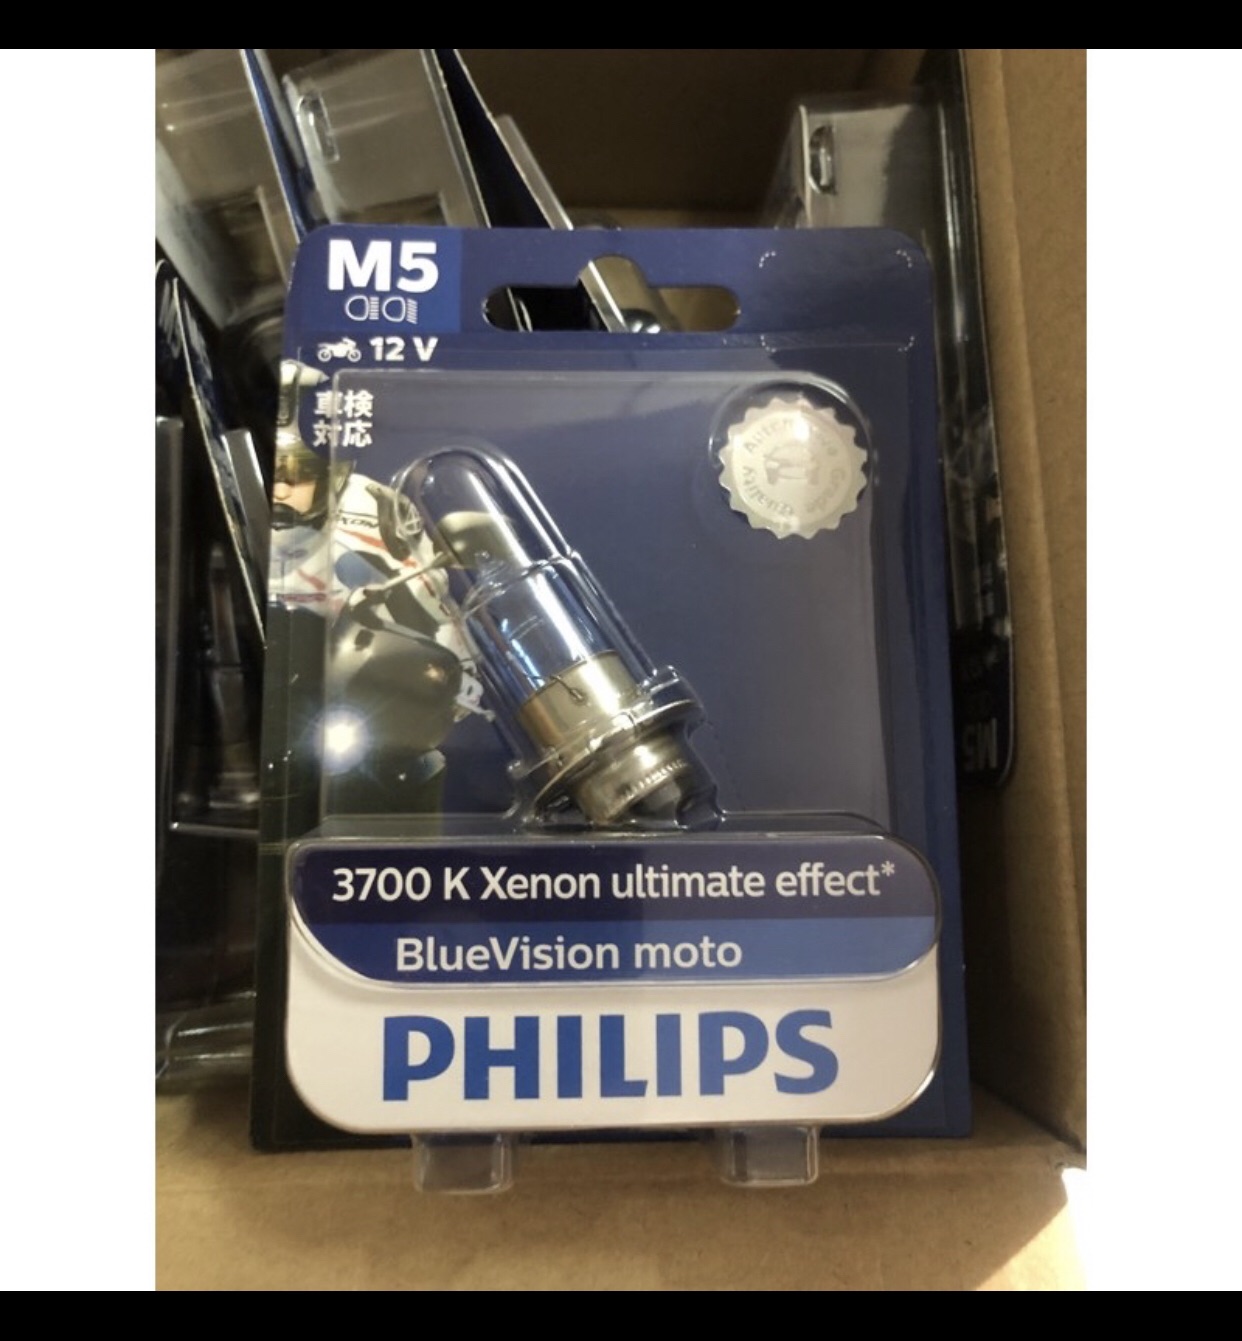 แท้ชัวร์ หลอดไฟหน้า PHILIPS M5 BLUE VISION แสงสว่างและขาวกว่าหลอดเดิมติดรถทั่ว